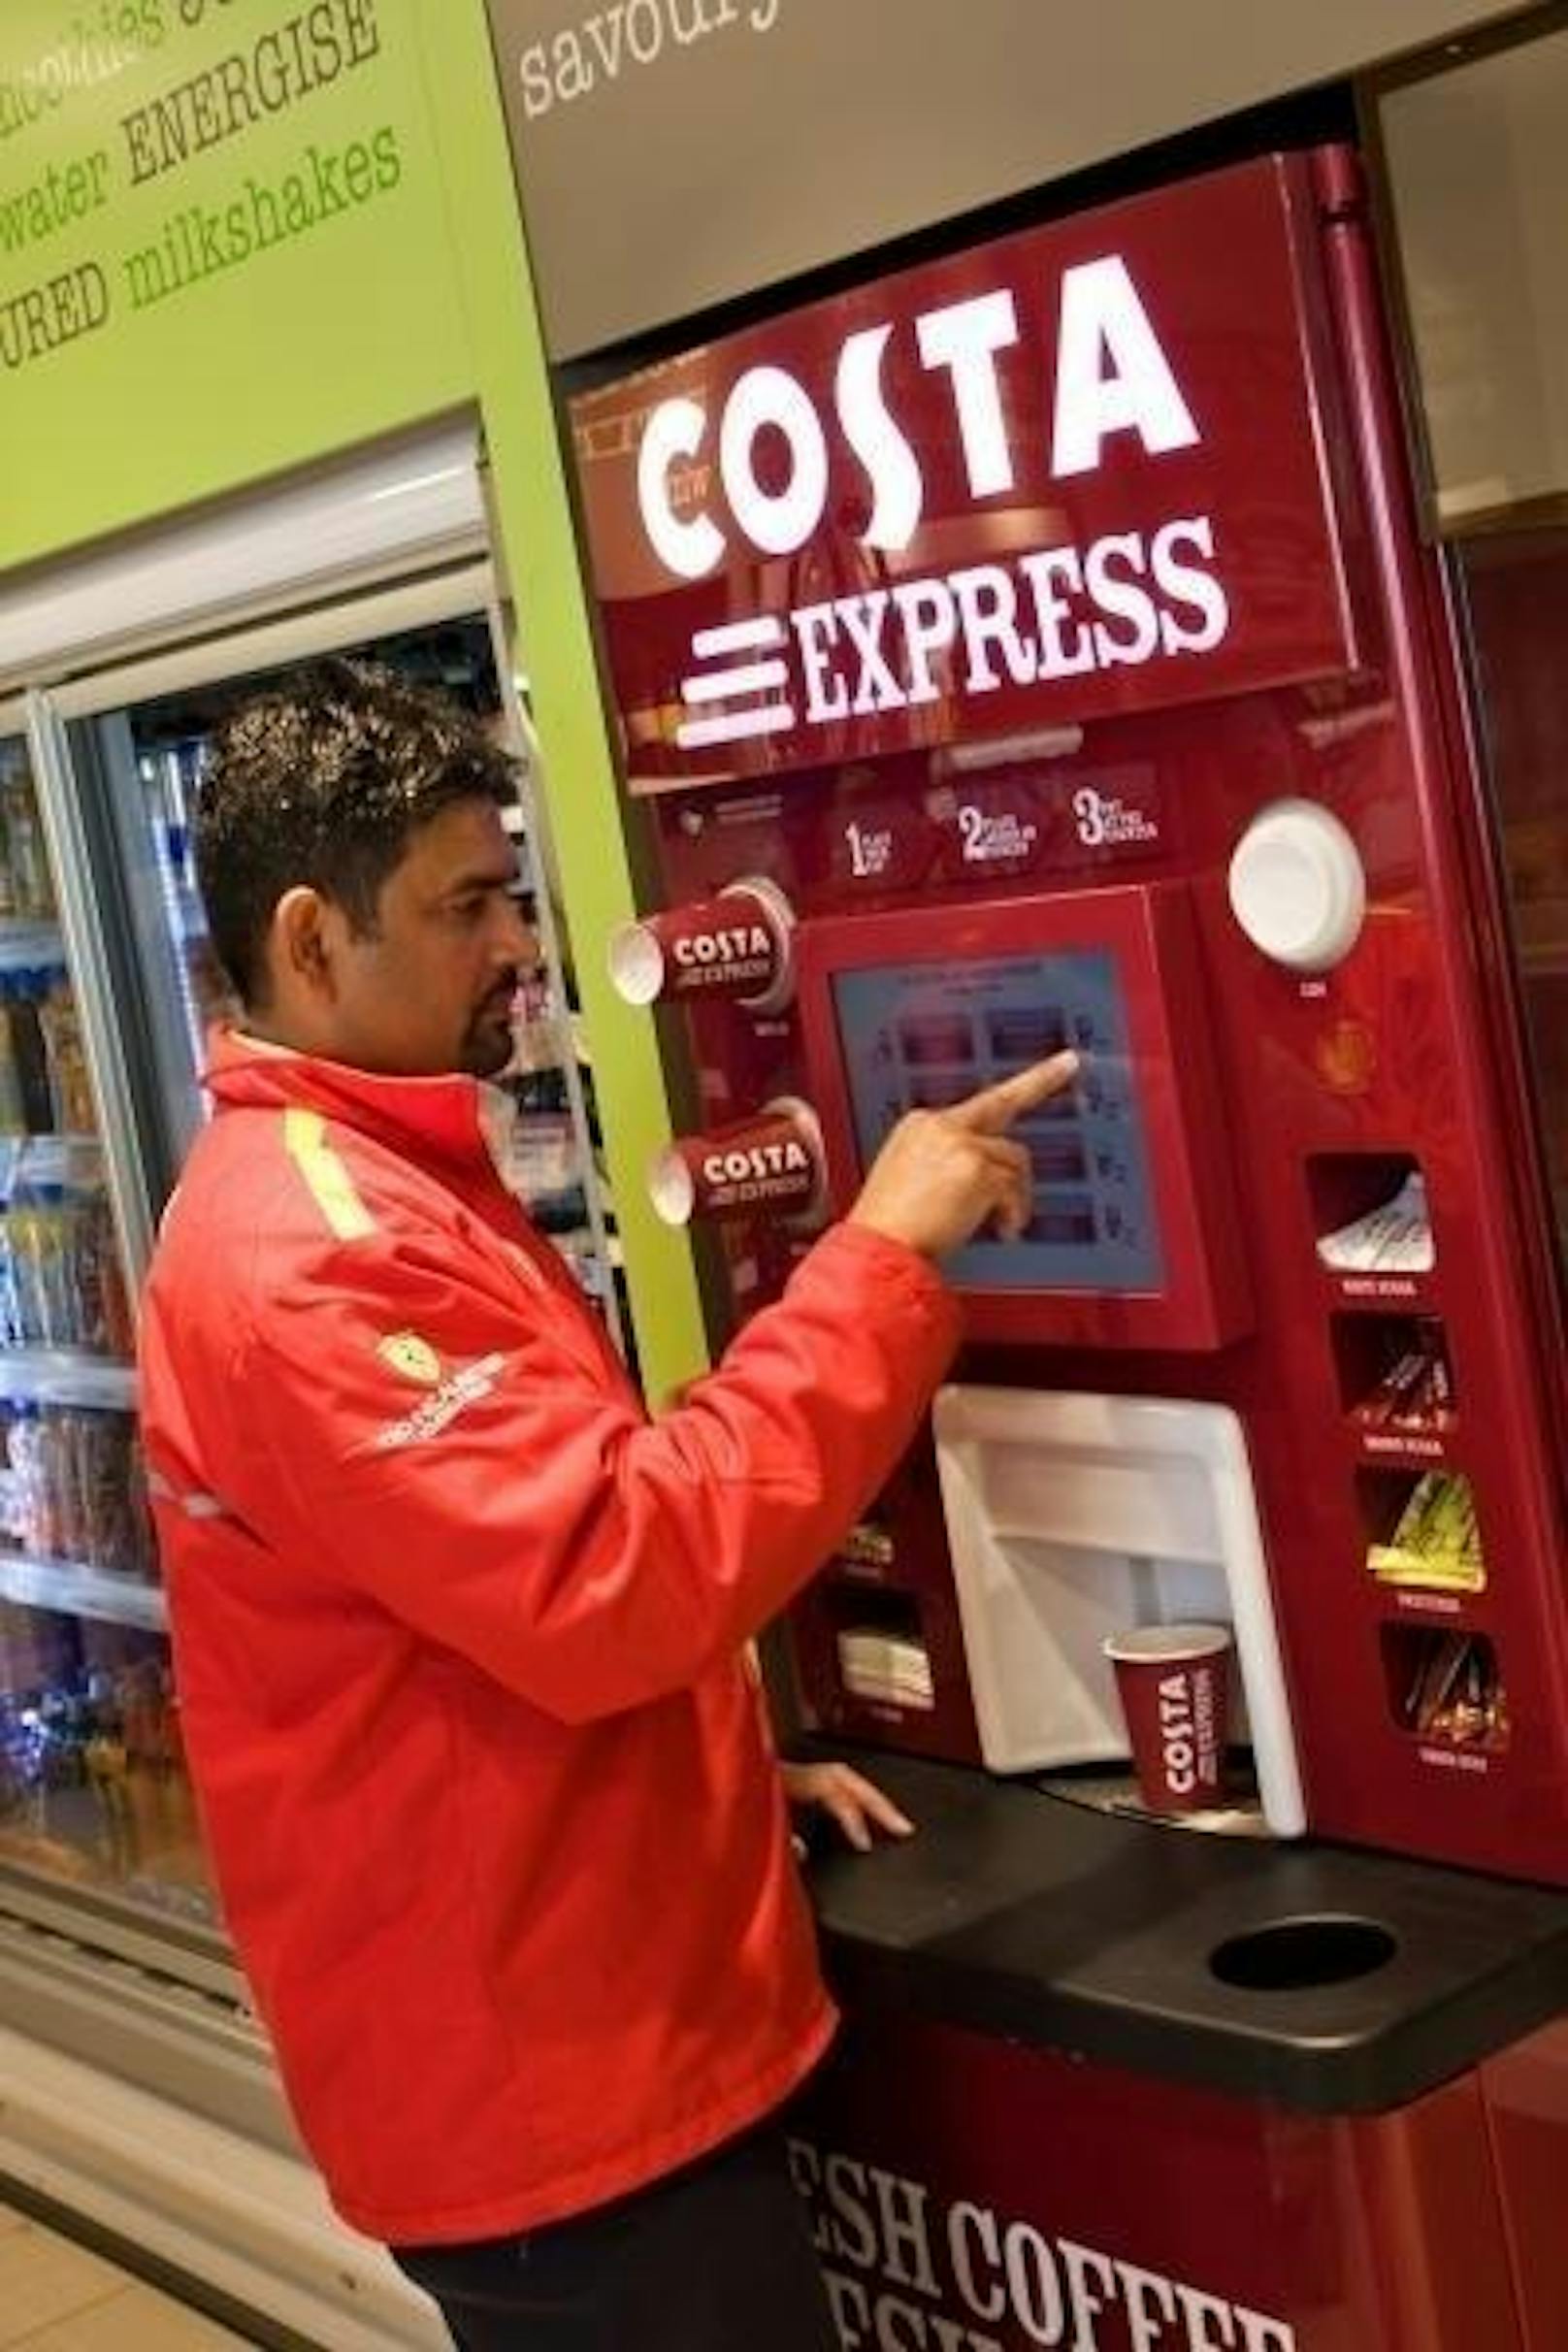 Coca-Cola hat dabei keine Kaffee-Shops im Visier, sondern will sich bei der Expansion laut eigenen Angaben vor allem auf Vending-Automaten, Foodservice-Maschinen und Ready-to-drink-Produkte fokussieren.